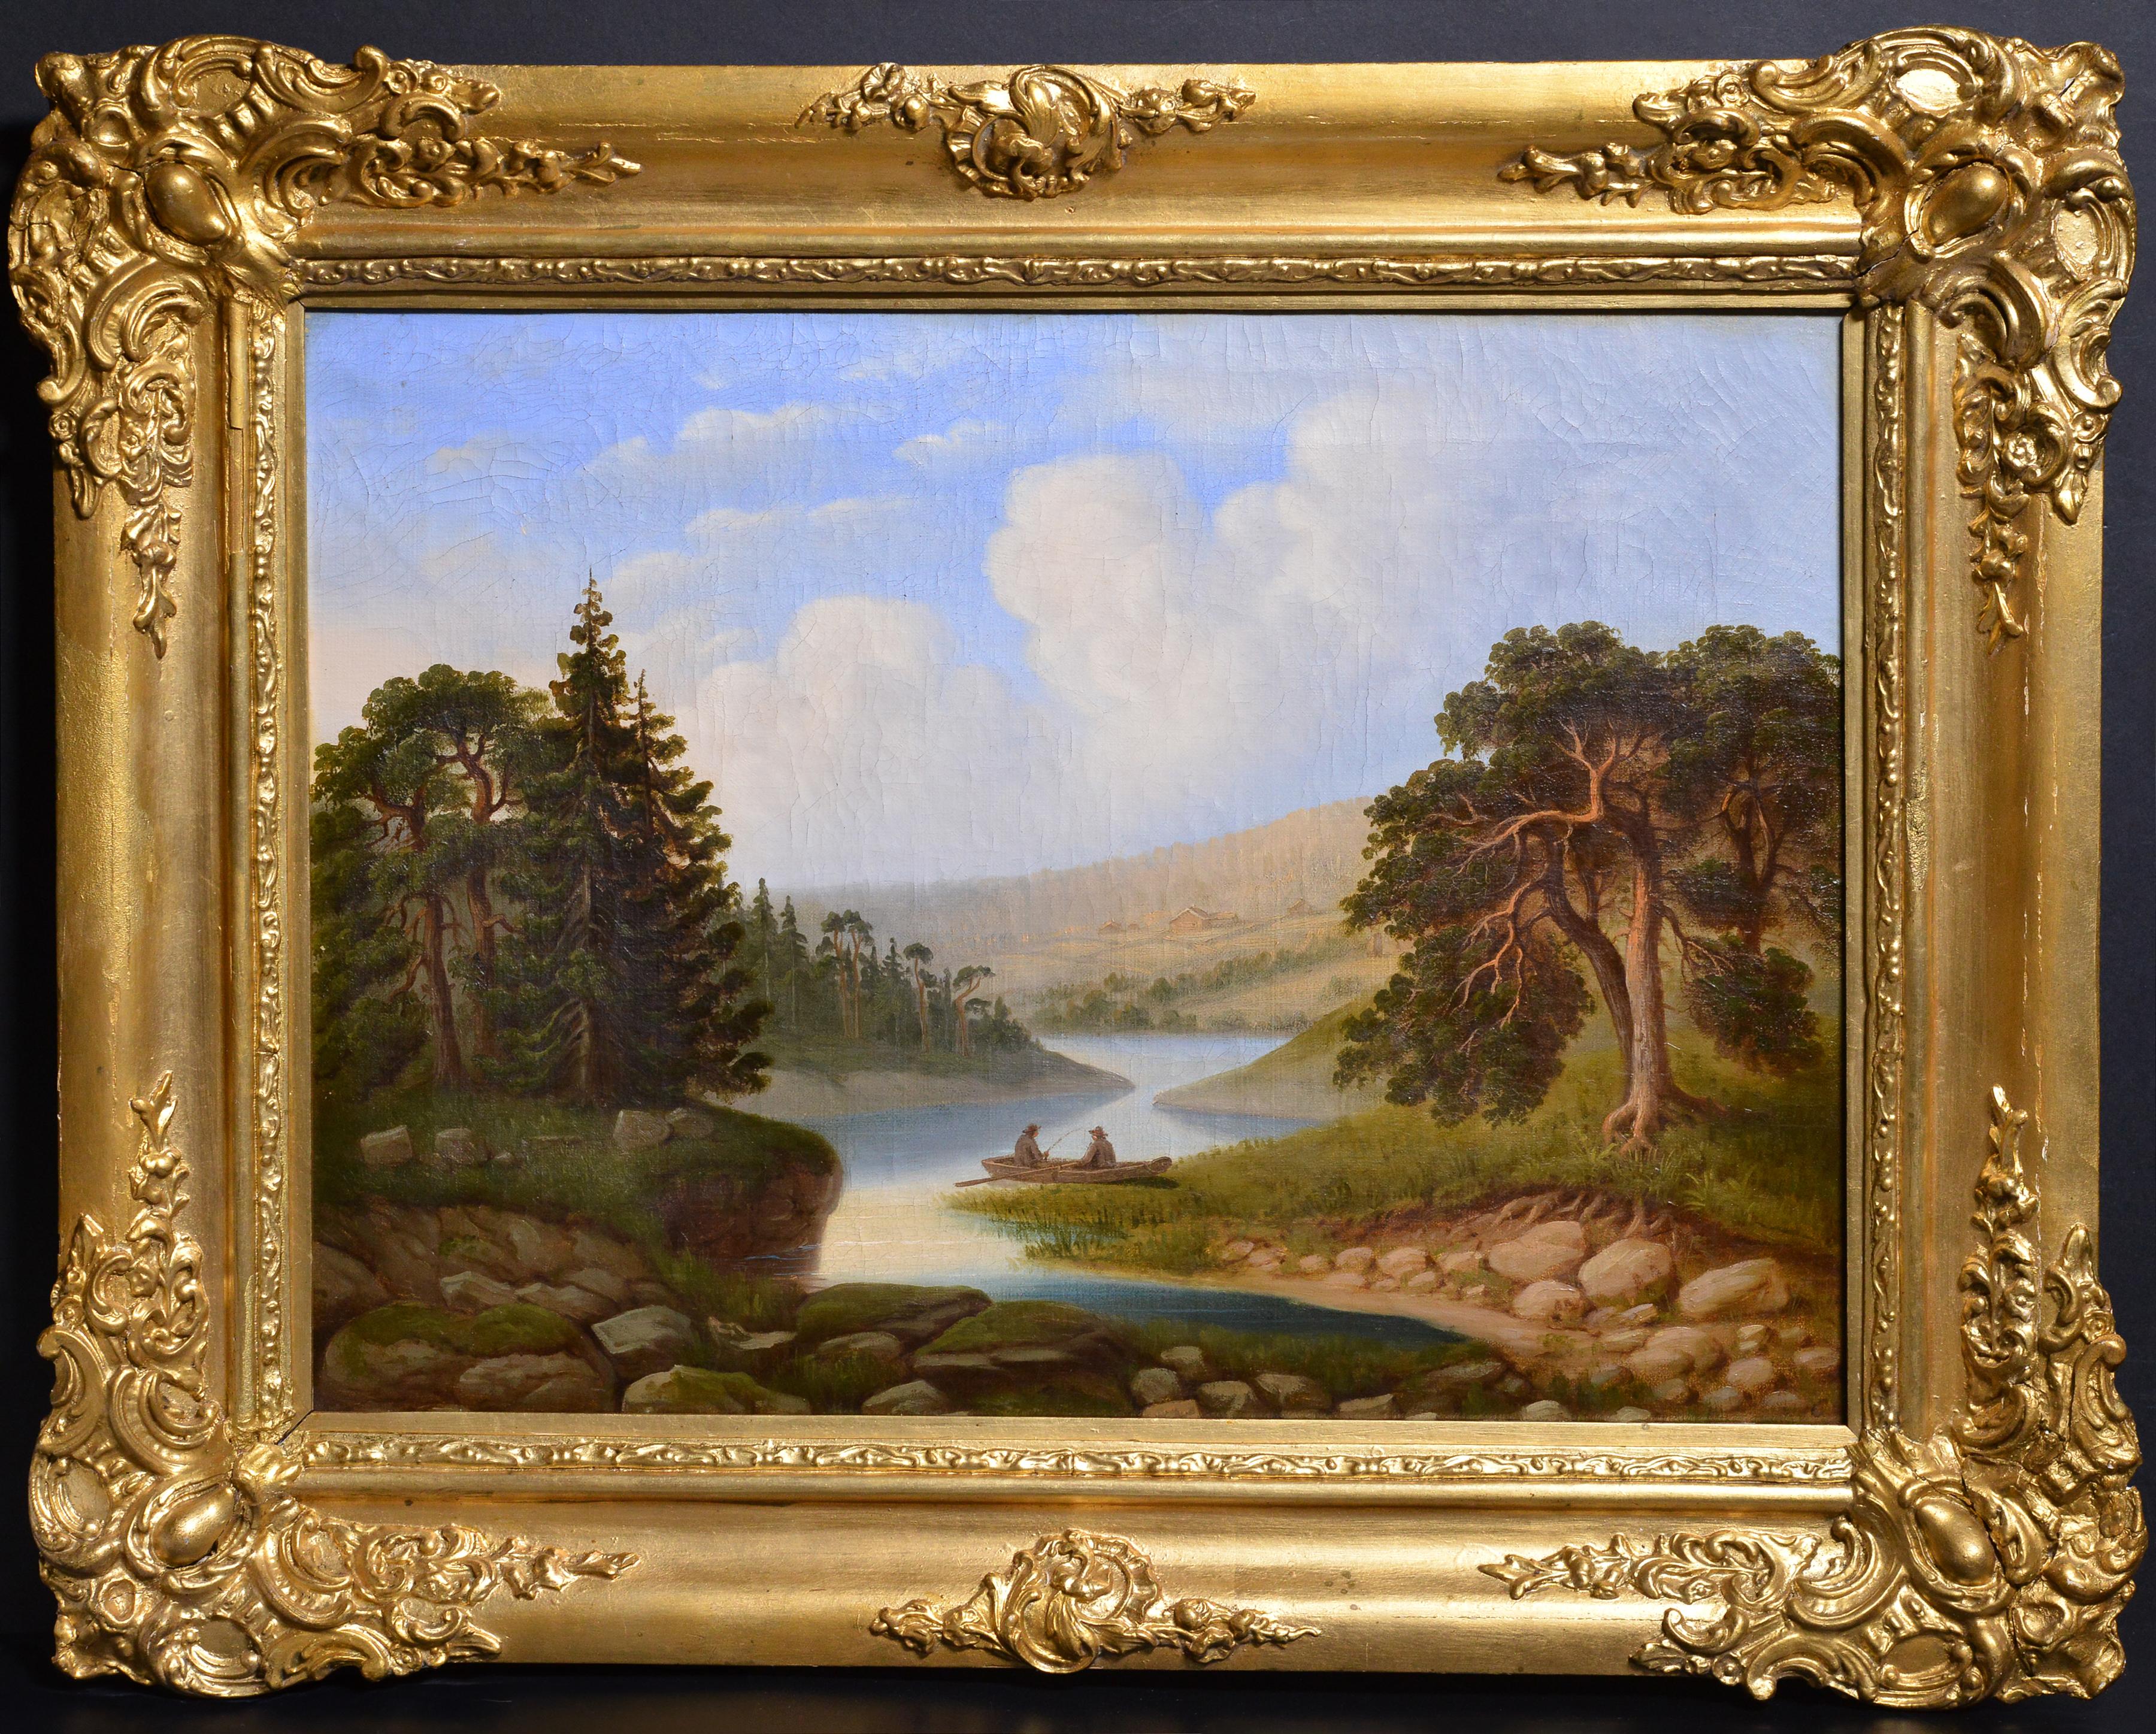 Pêcheurs sur la rivière Paysage scandinave idyllique Peinture à l'huile du 19e siècle